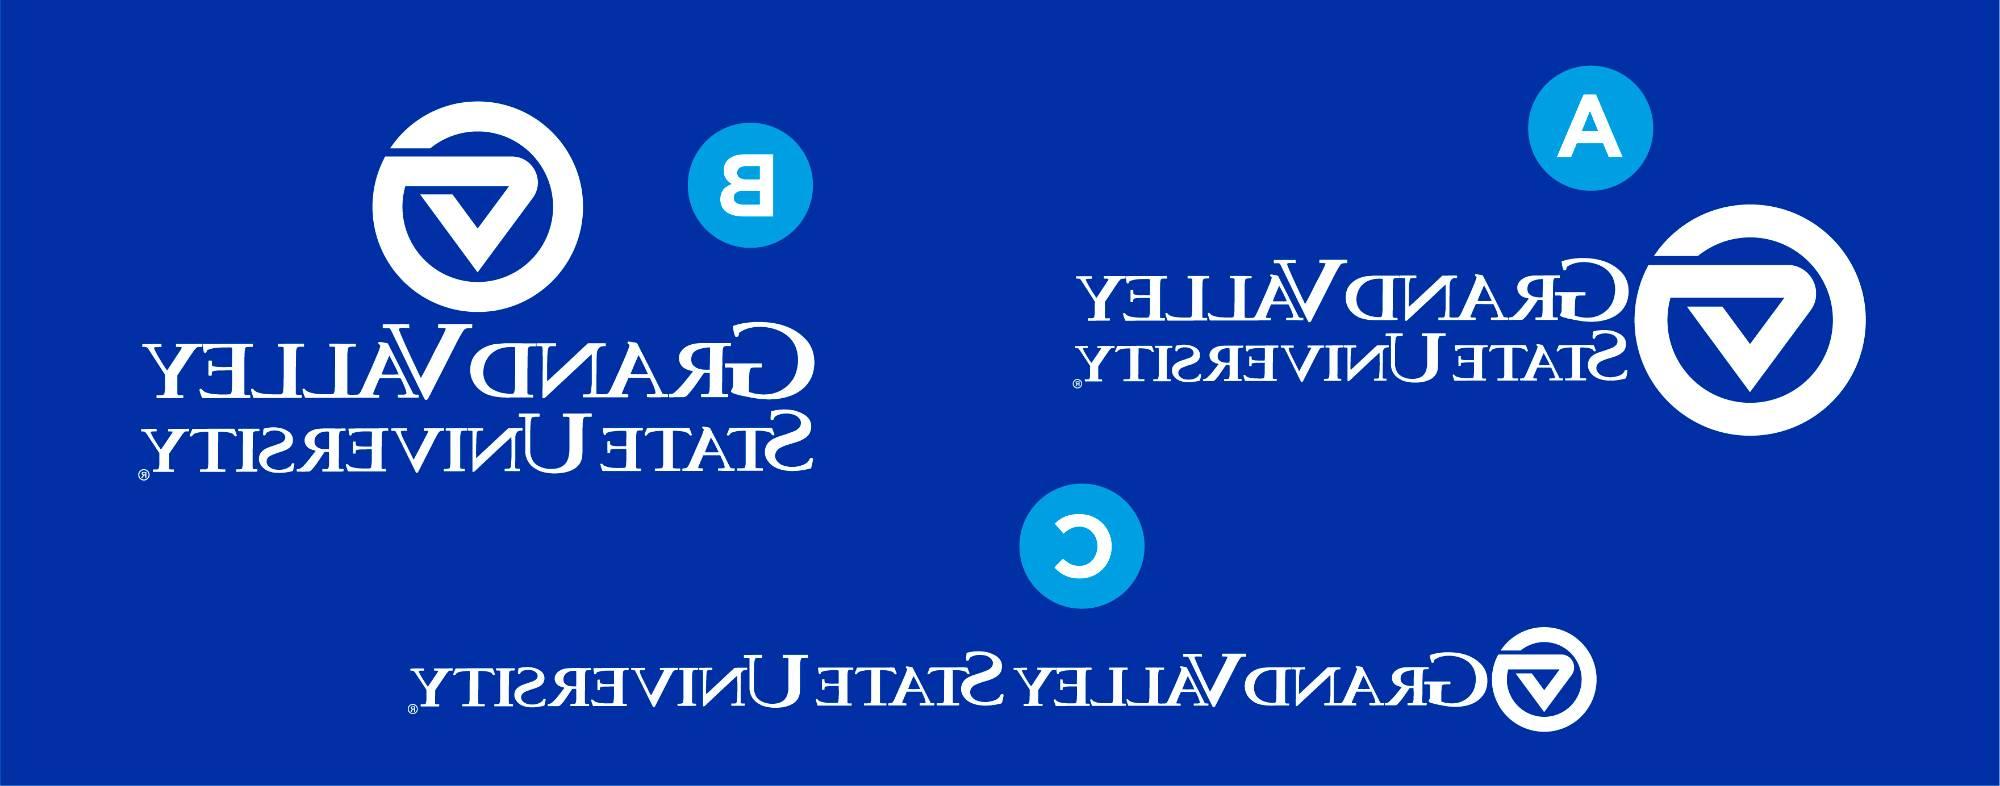 三个大峡谷标志:一个左标志，一个左标志，一个单线标志. 的 letter "A" is next to the markleft logo, "B" is next to the marktop logo, "C" is next to the 单行的 logo.